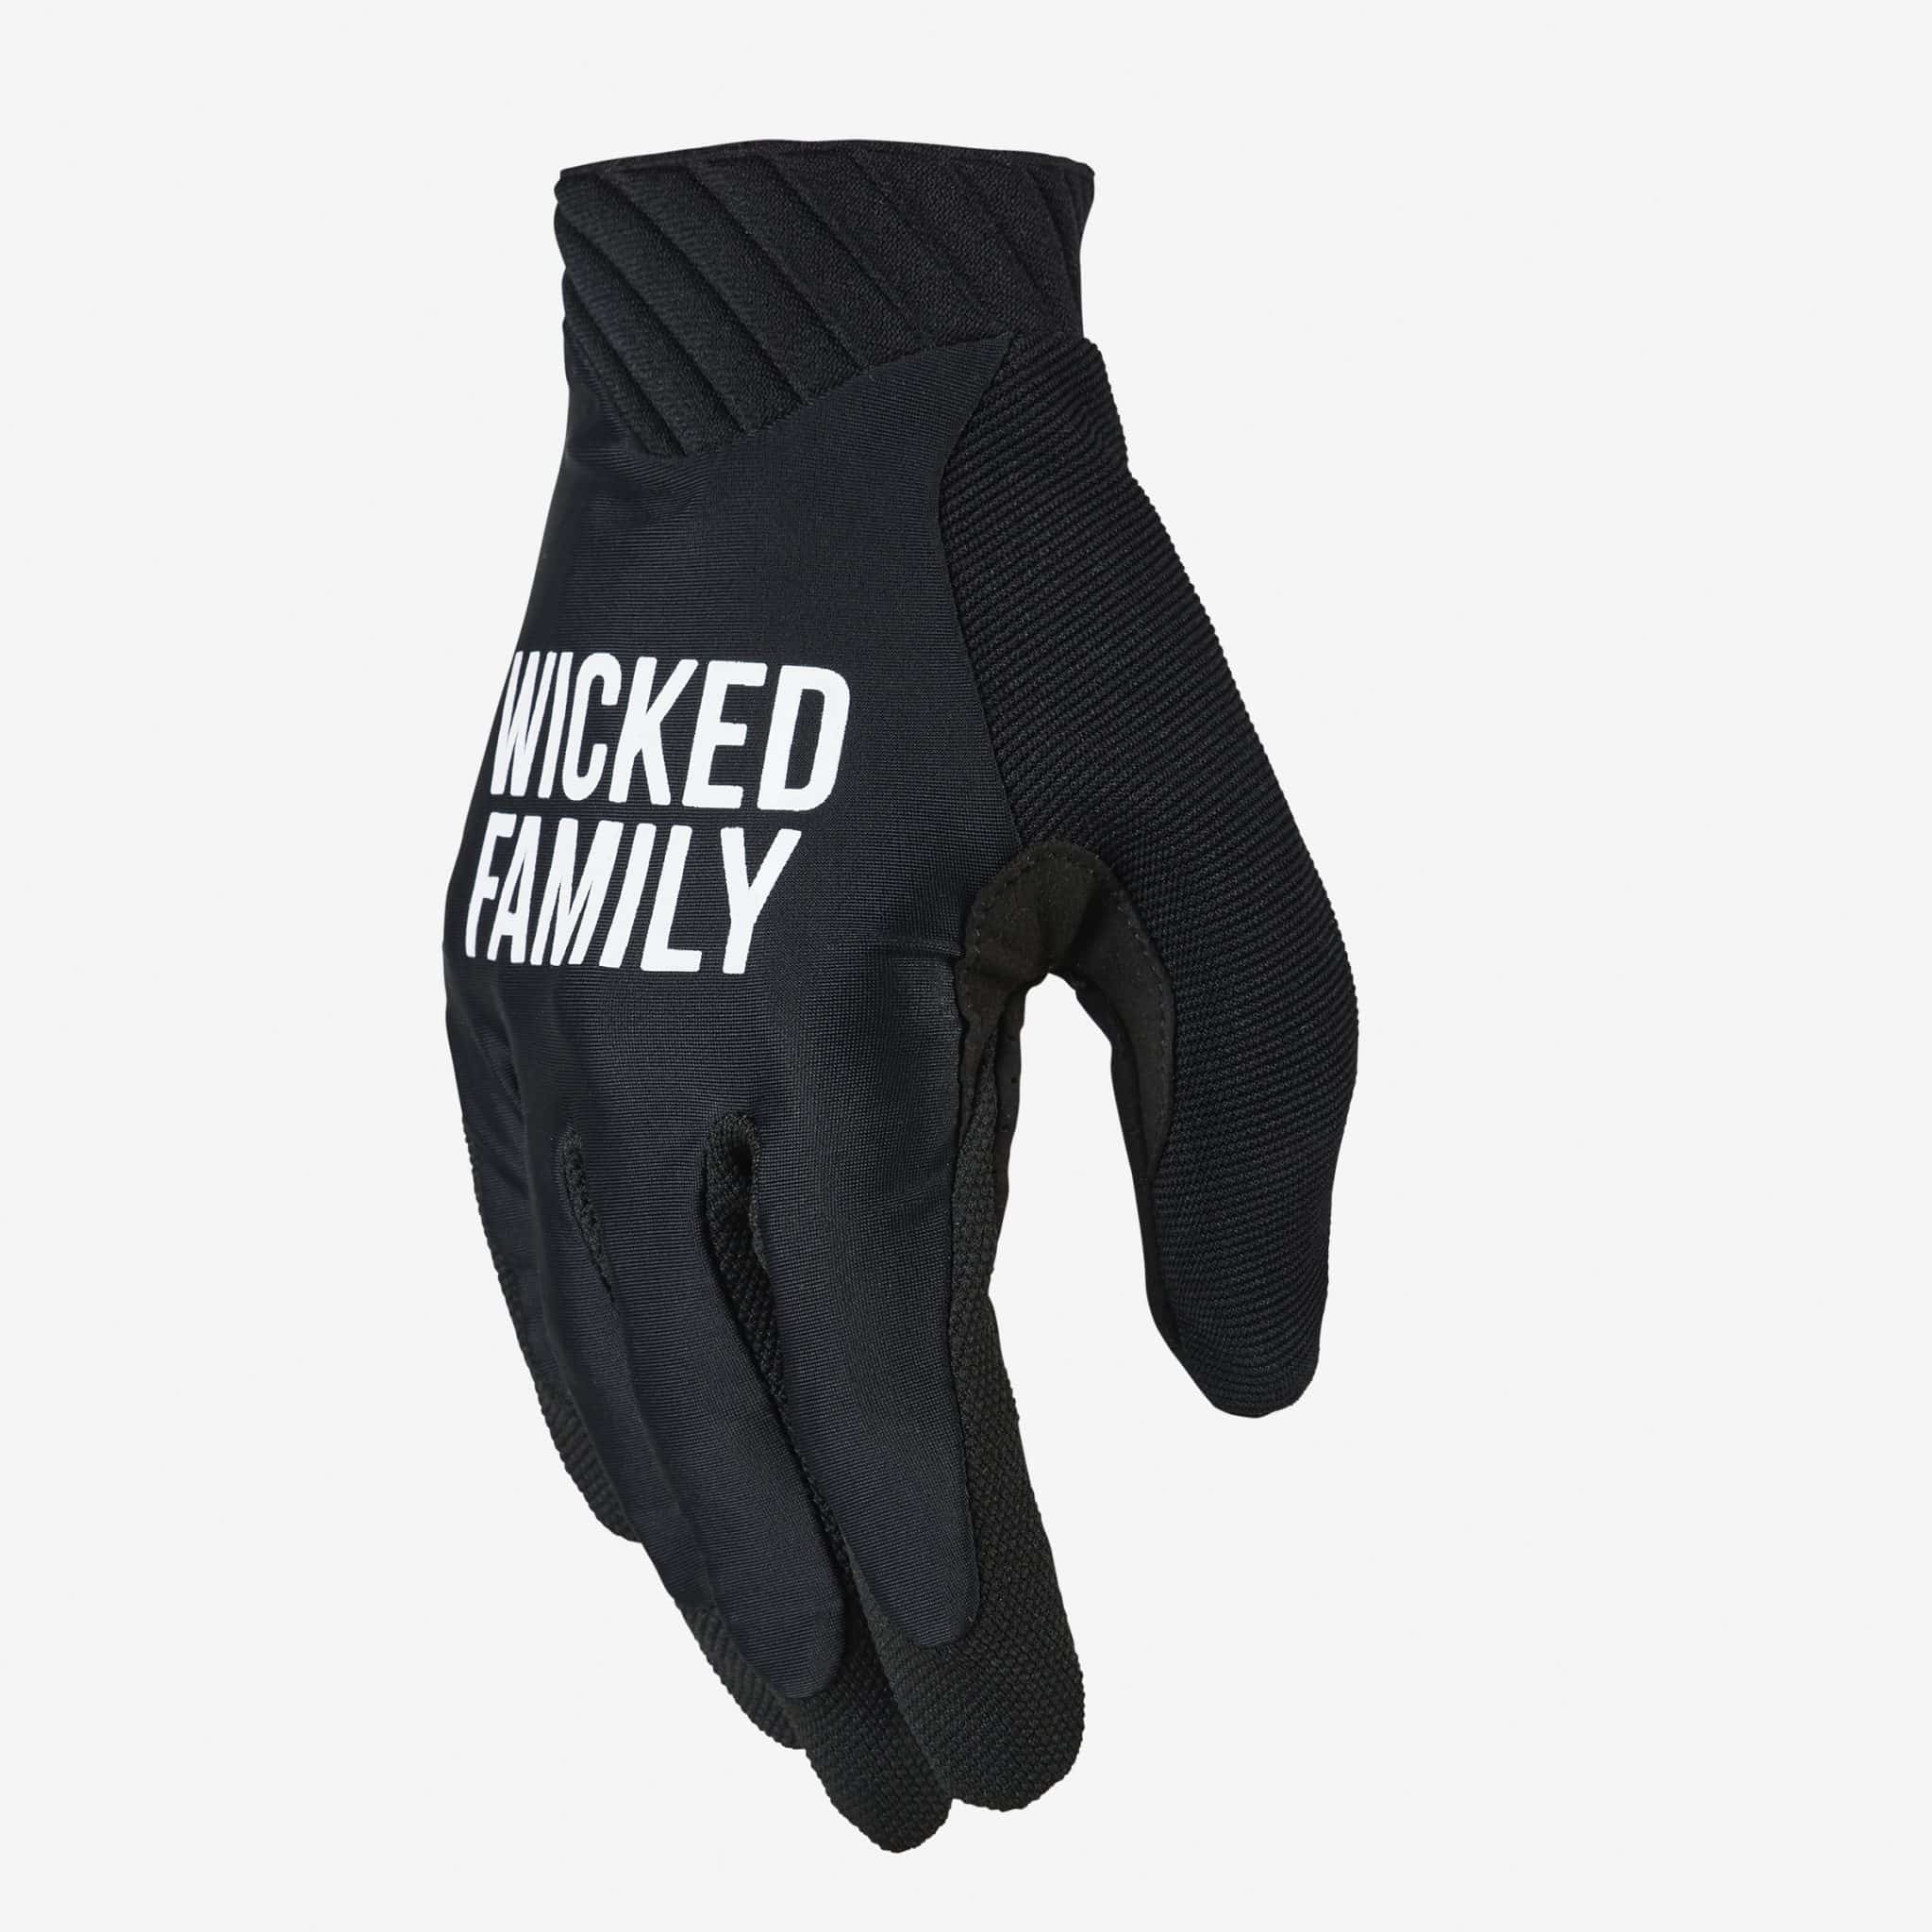 Motocross gloves & Dirt bike gloves - Wicked Family - MX gear